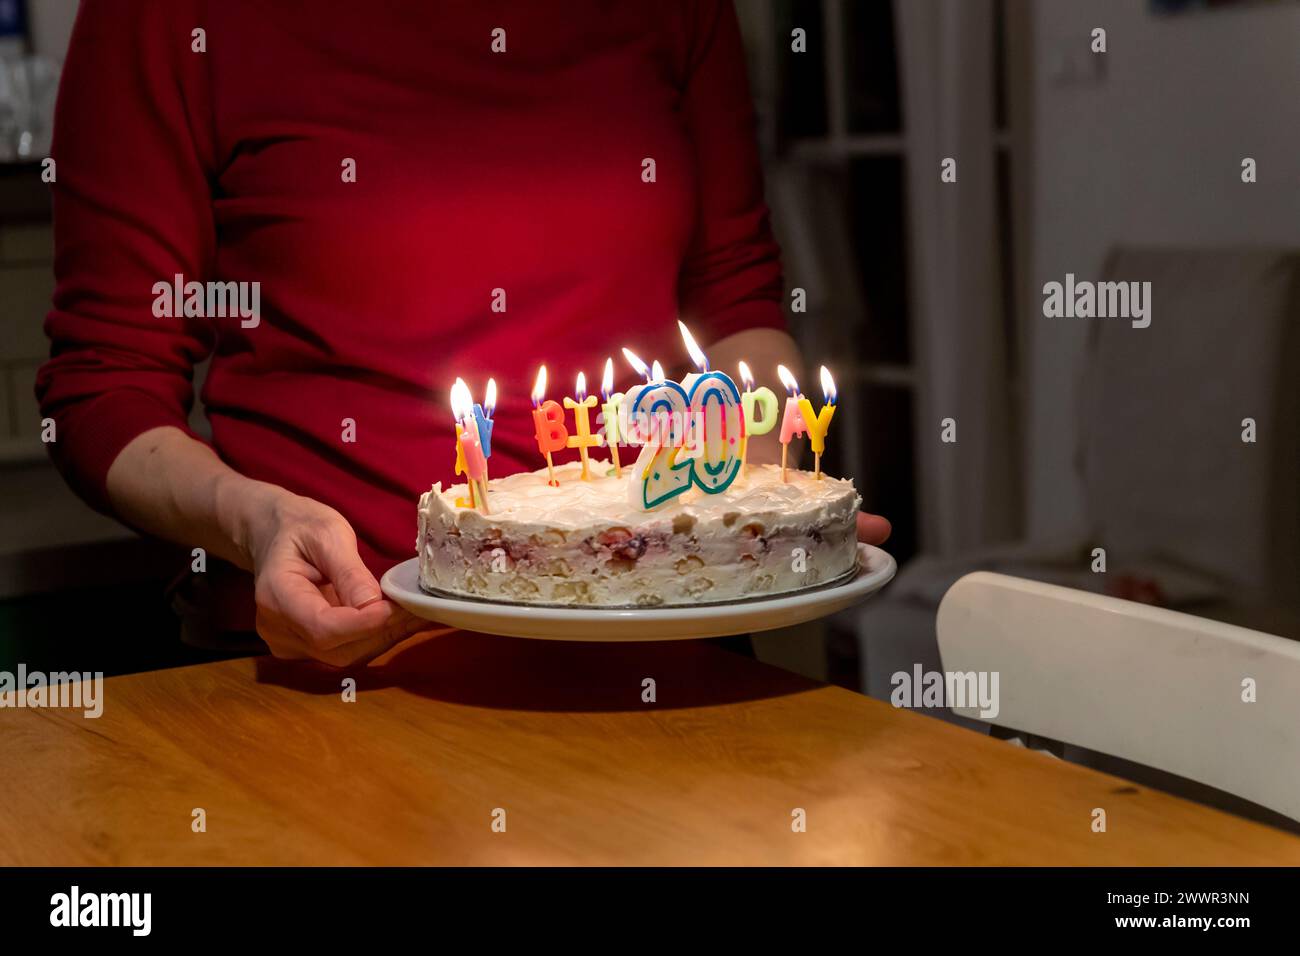 mains avec allumettes allumant des bougies vax sur le gâteau d'anniversaire Banque D'Images